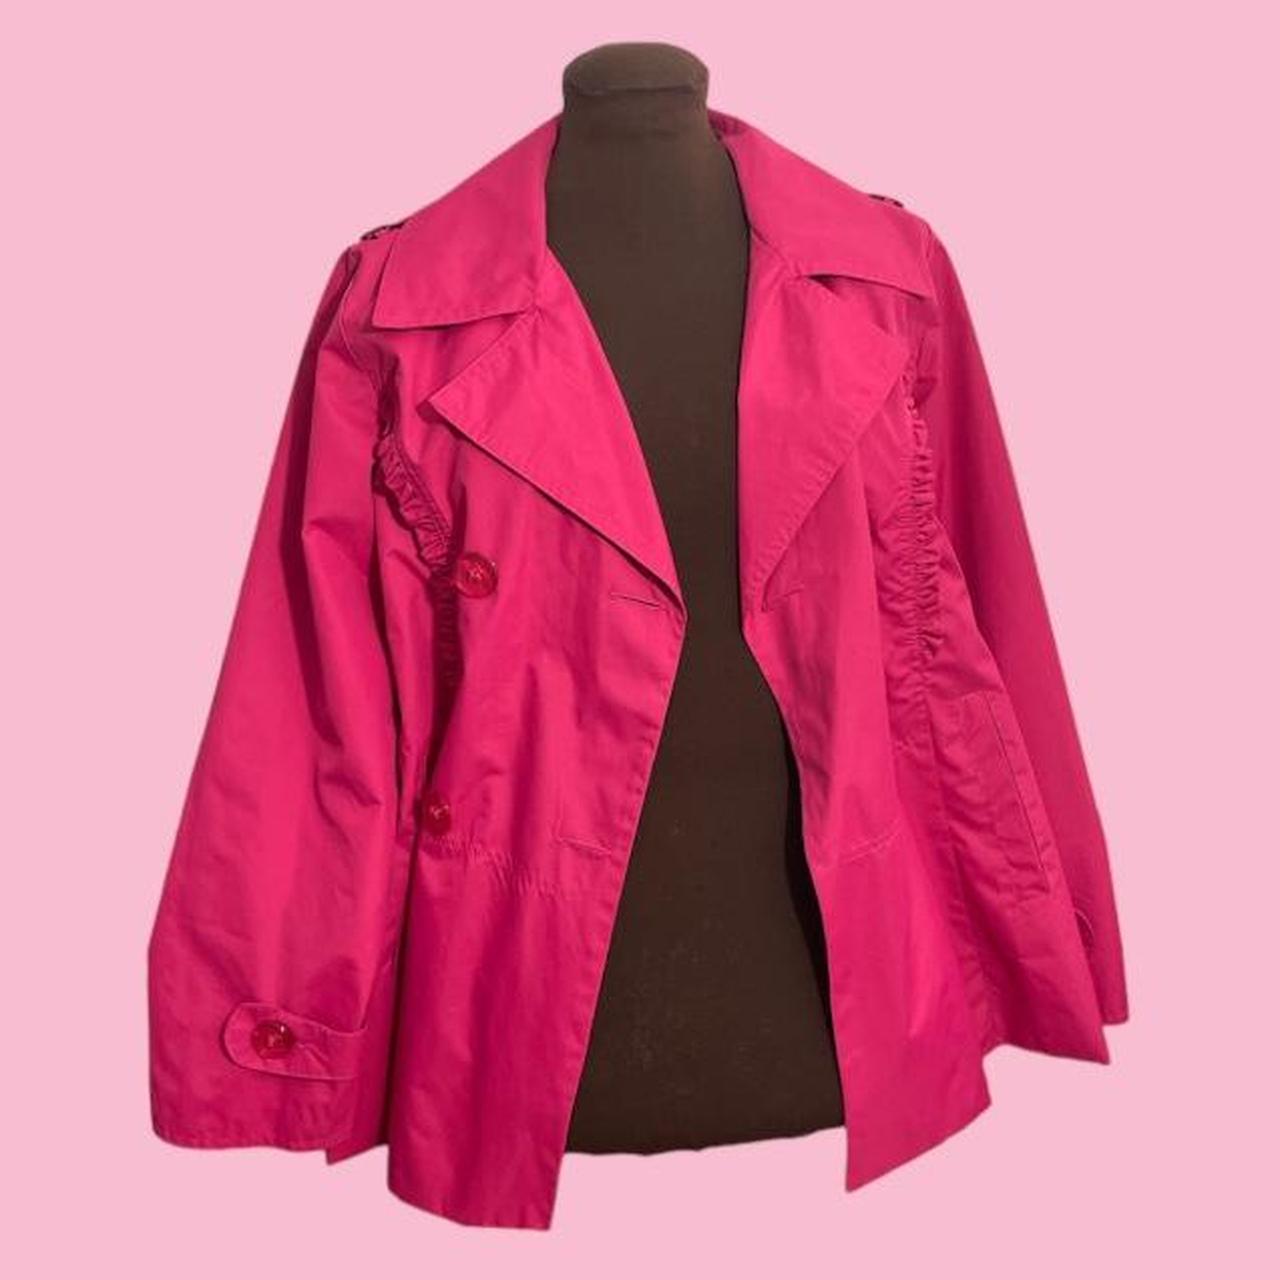 Hawke & Co. Women's Pink Jacket